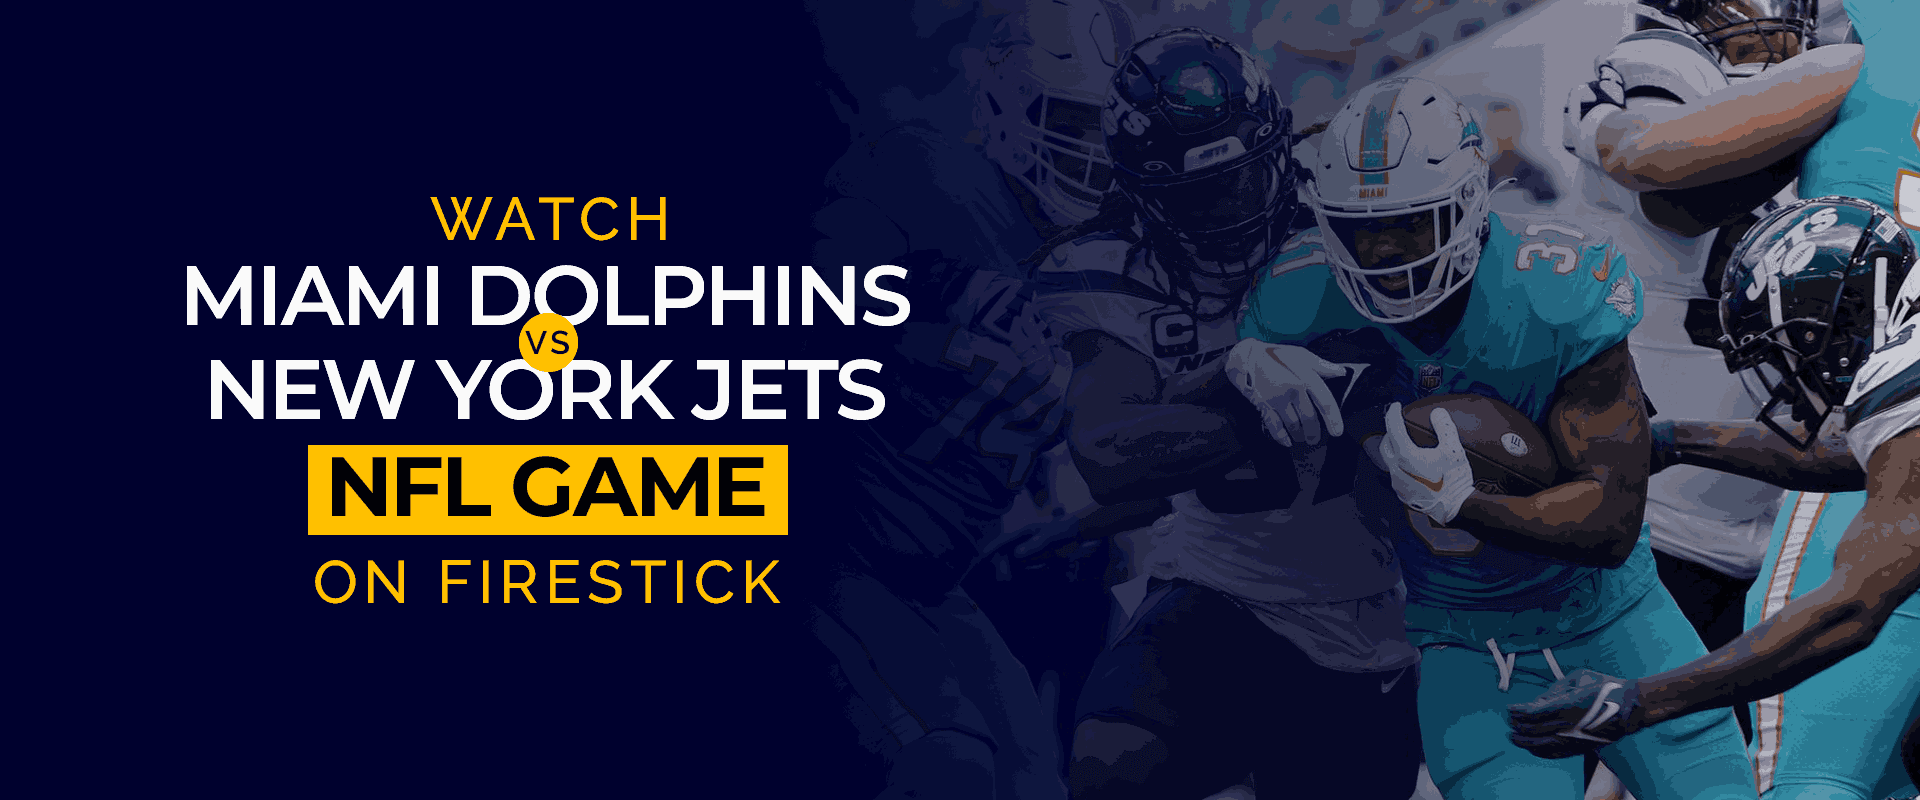 Bekijk de wedstrijd NFL Miami Dolphins versus New York Jets live op Firestick